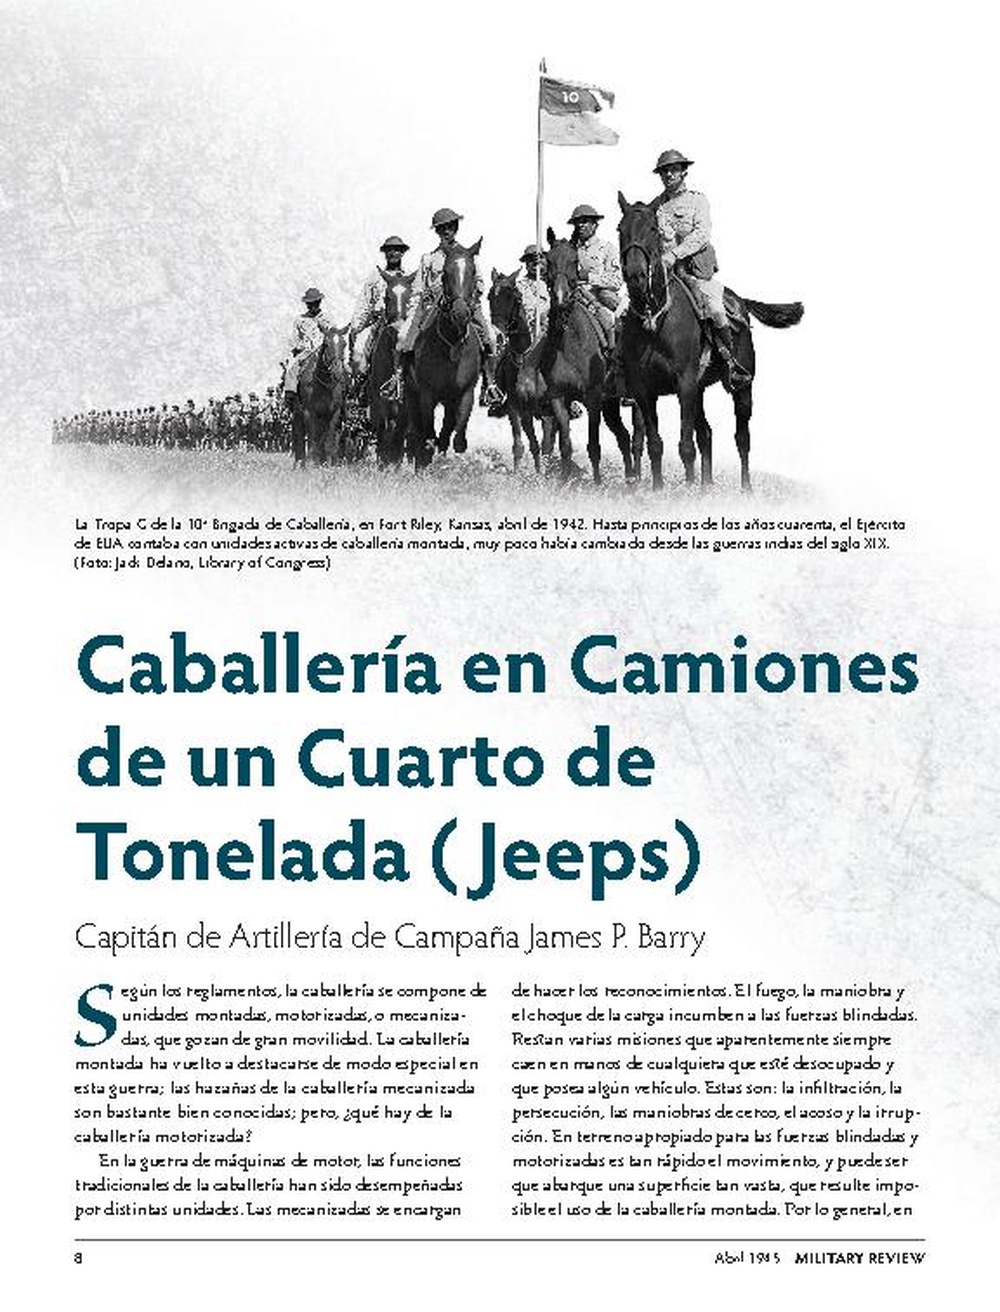 Military Review Hispano-American April 1945 - Caballería en Camiones de un Cuarto de Tonelada (Jeeps)